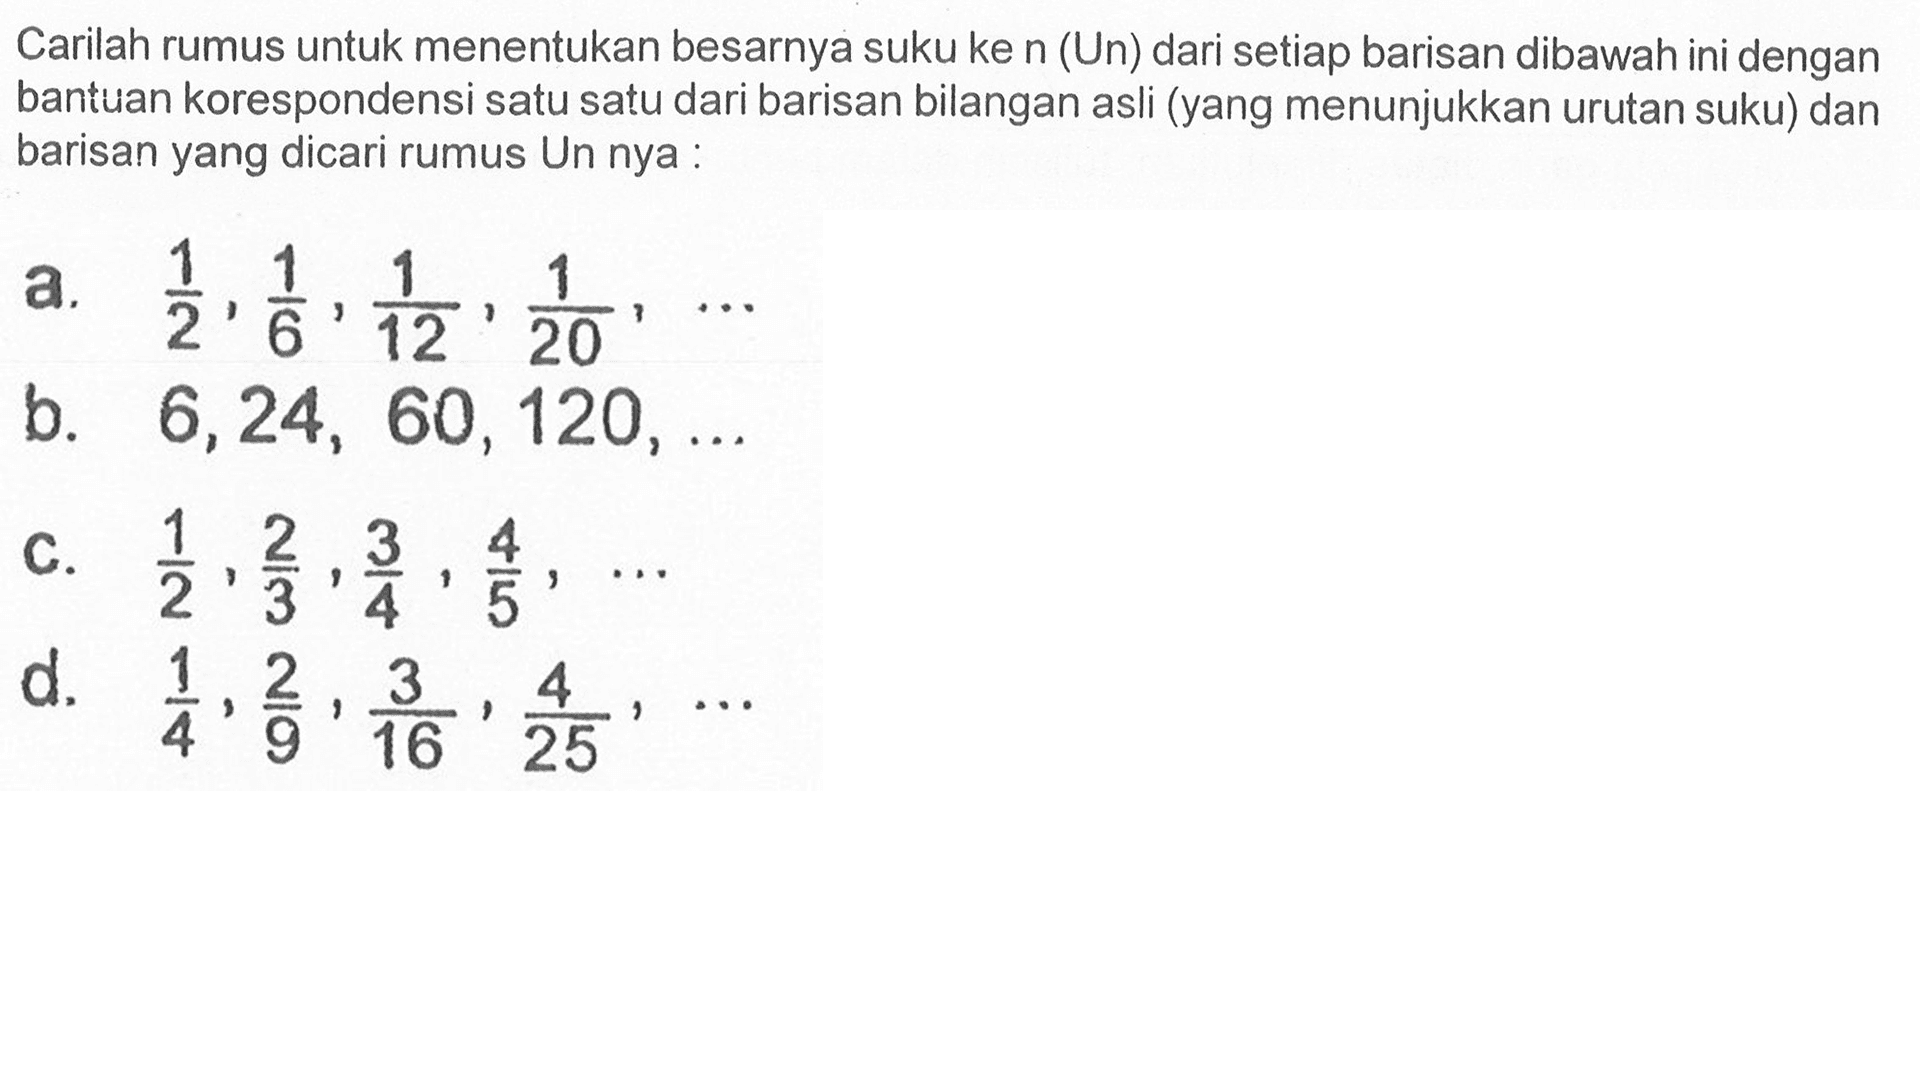 Carilah rumus untuk menentukan besarnya suku ke n (Un) dari setiap barisan dibawah ini dengan bantuan korespondensi satu satu dari barisan bilangan asli (yang menunjukkan urutan suku) dan barisan yang dicari rumus Un nya: a. 1/2, 1/6, 1/12, 1/20, ... b. 6, 24, 60, 120, ... c. 1/2, 2/3, 3/4, 4/5, ... d. 1/4, 2/9, 3/16, 4/25, ...